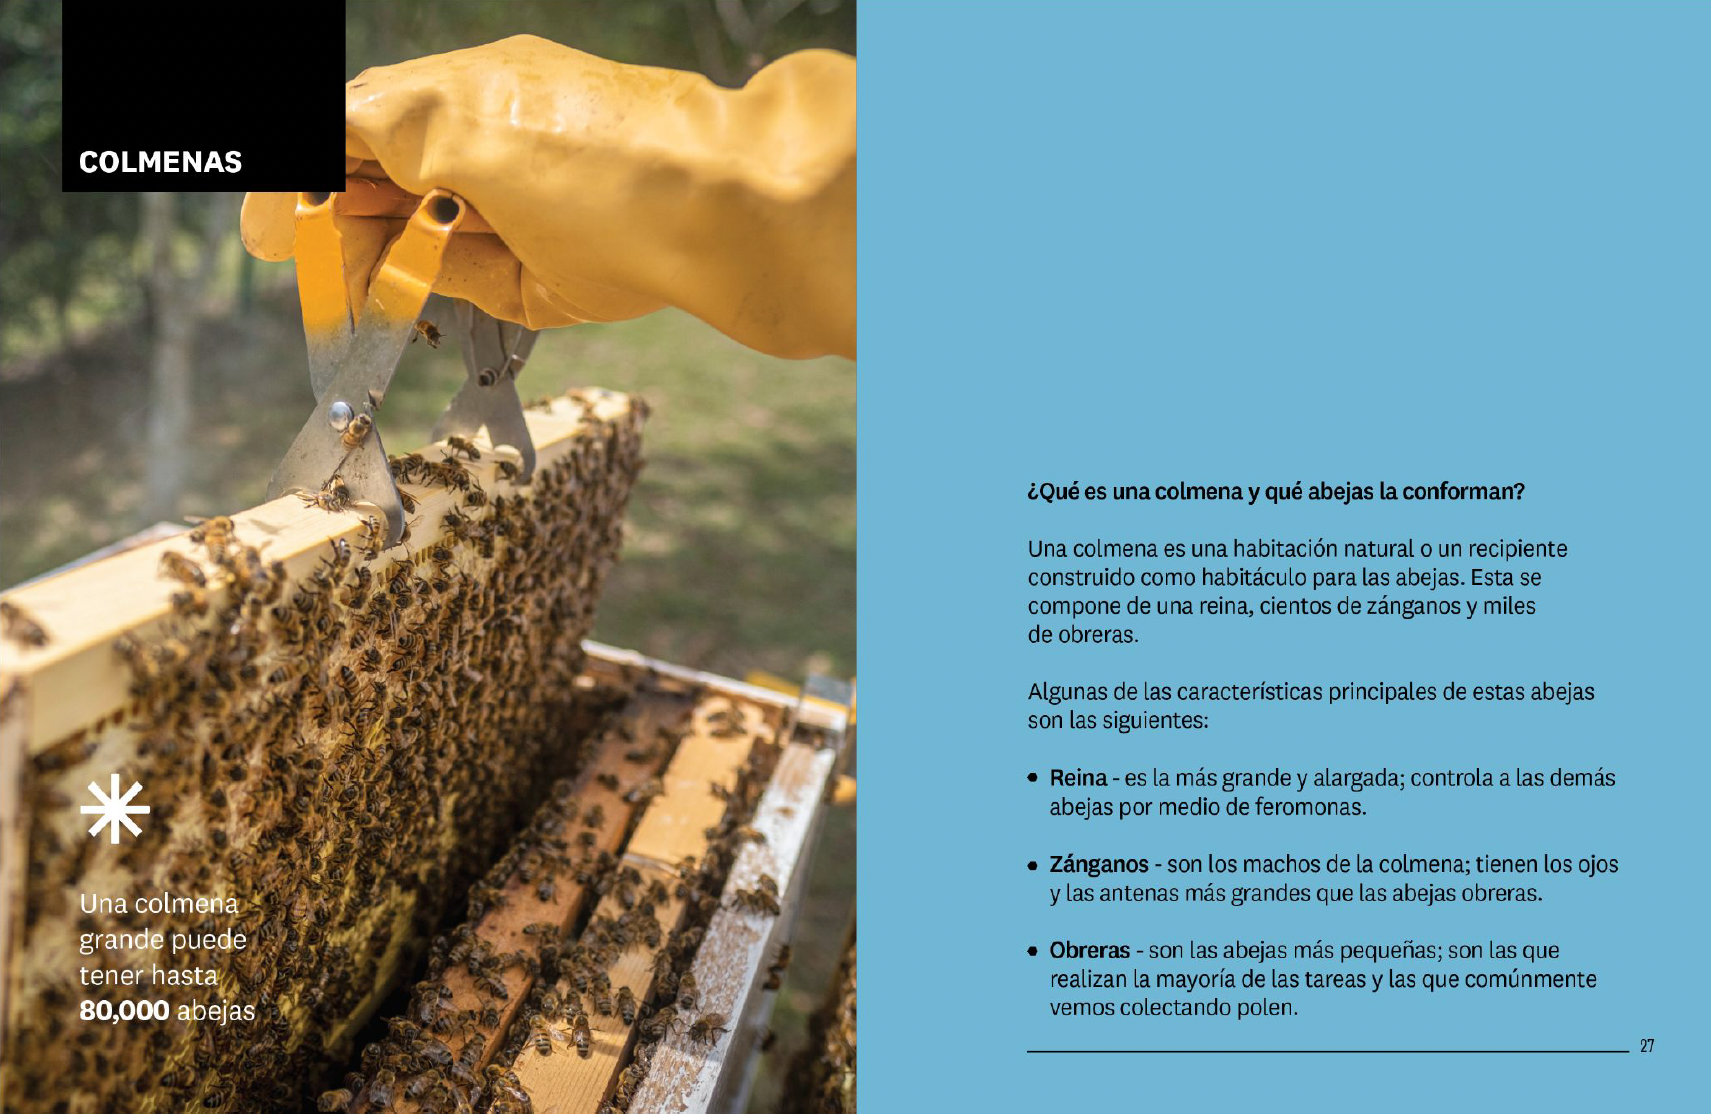 Polen natural de abeja directo de apicultores leoneses